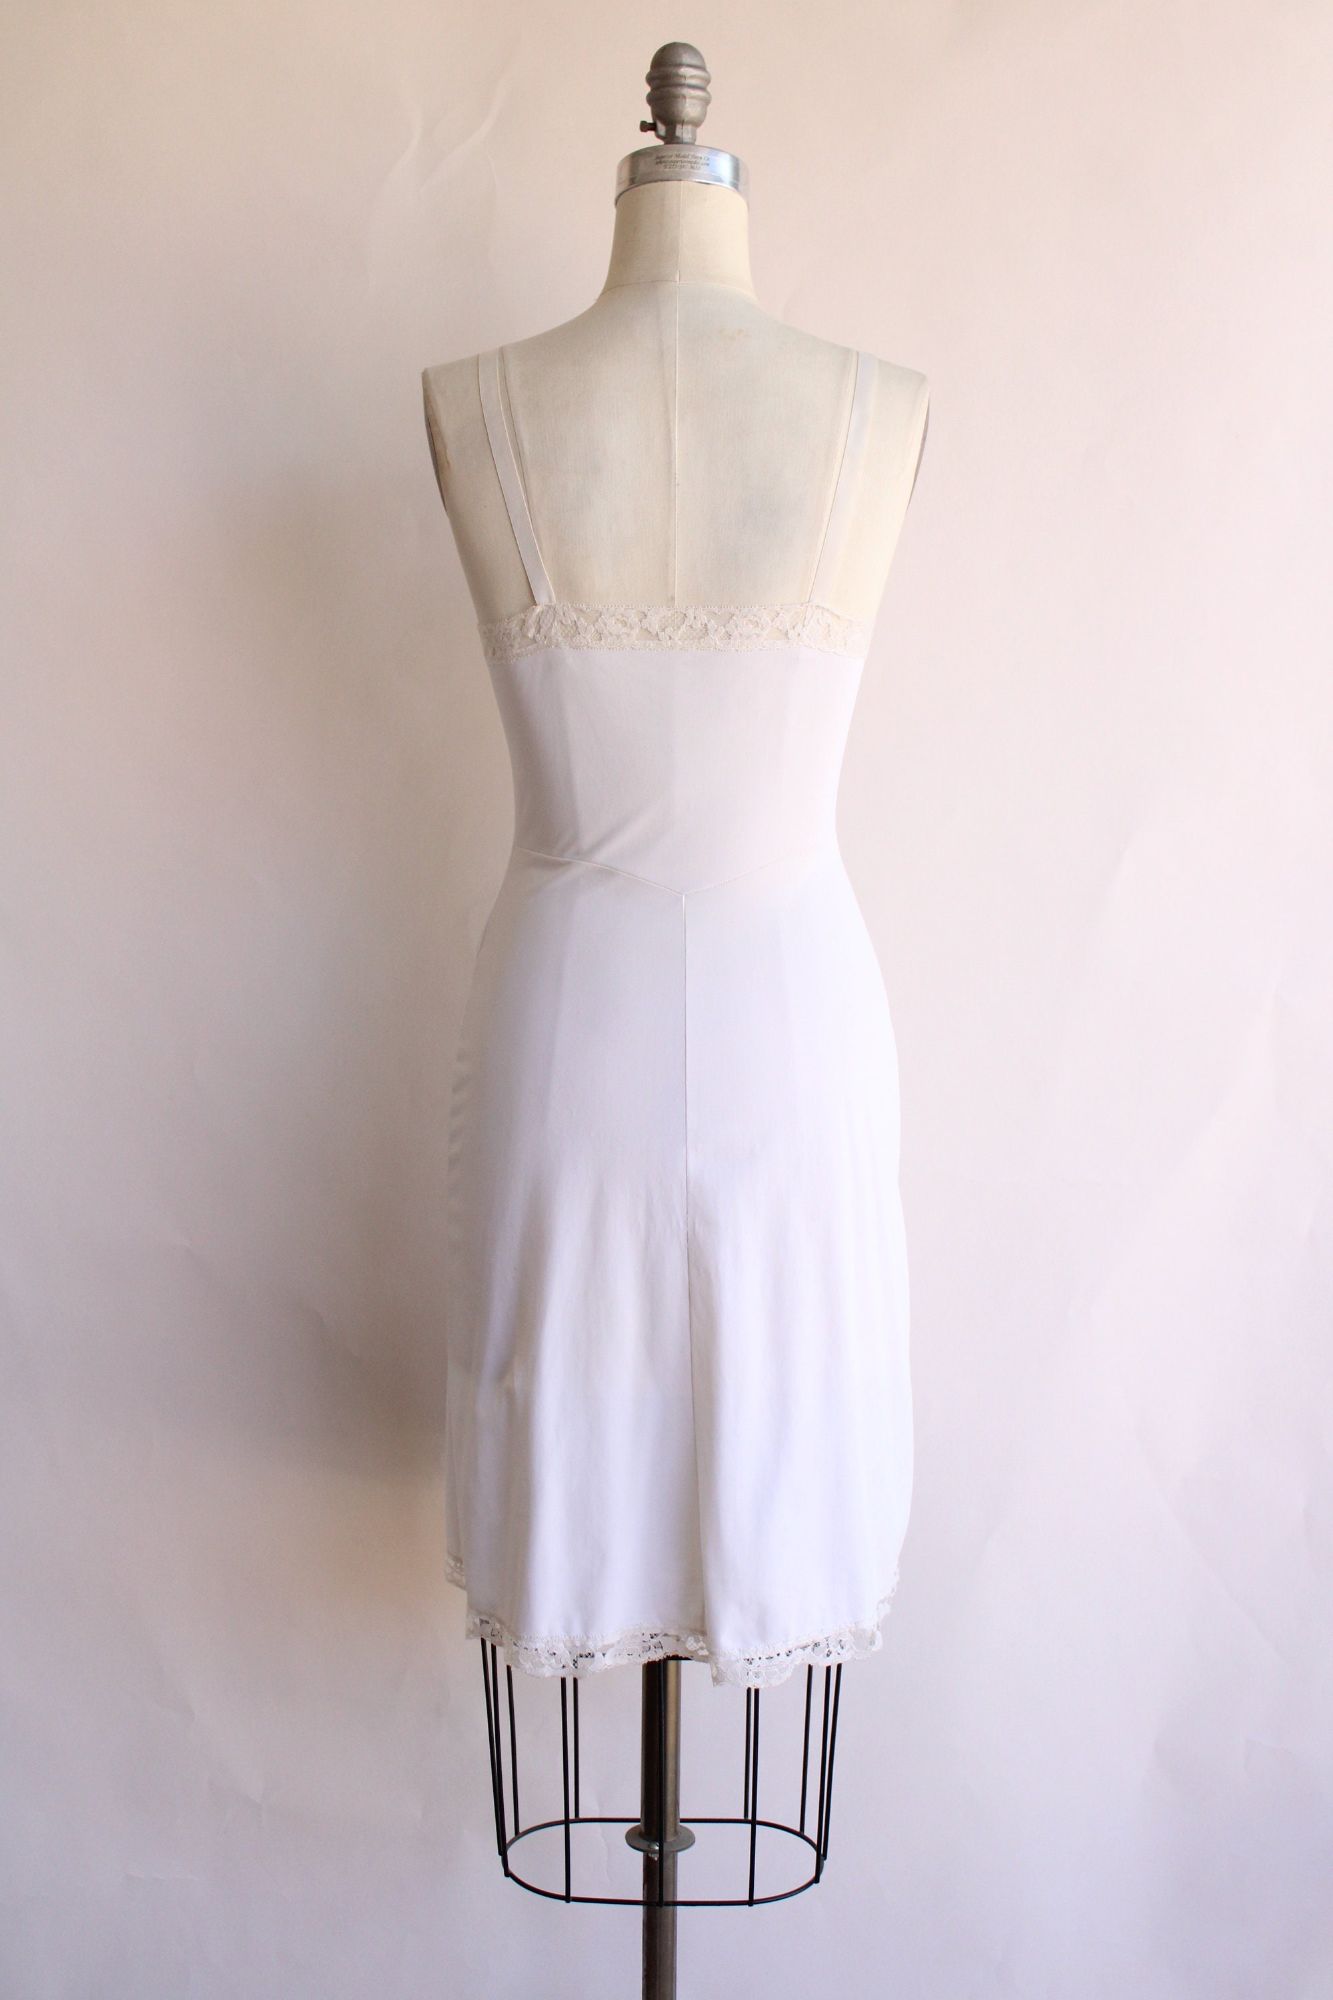 Vintage 1960s Gossard White Nylon Full Slip, Size 32 Short